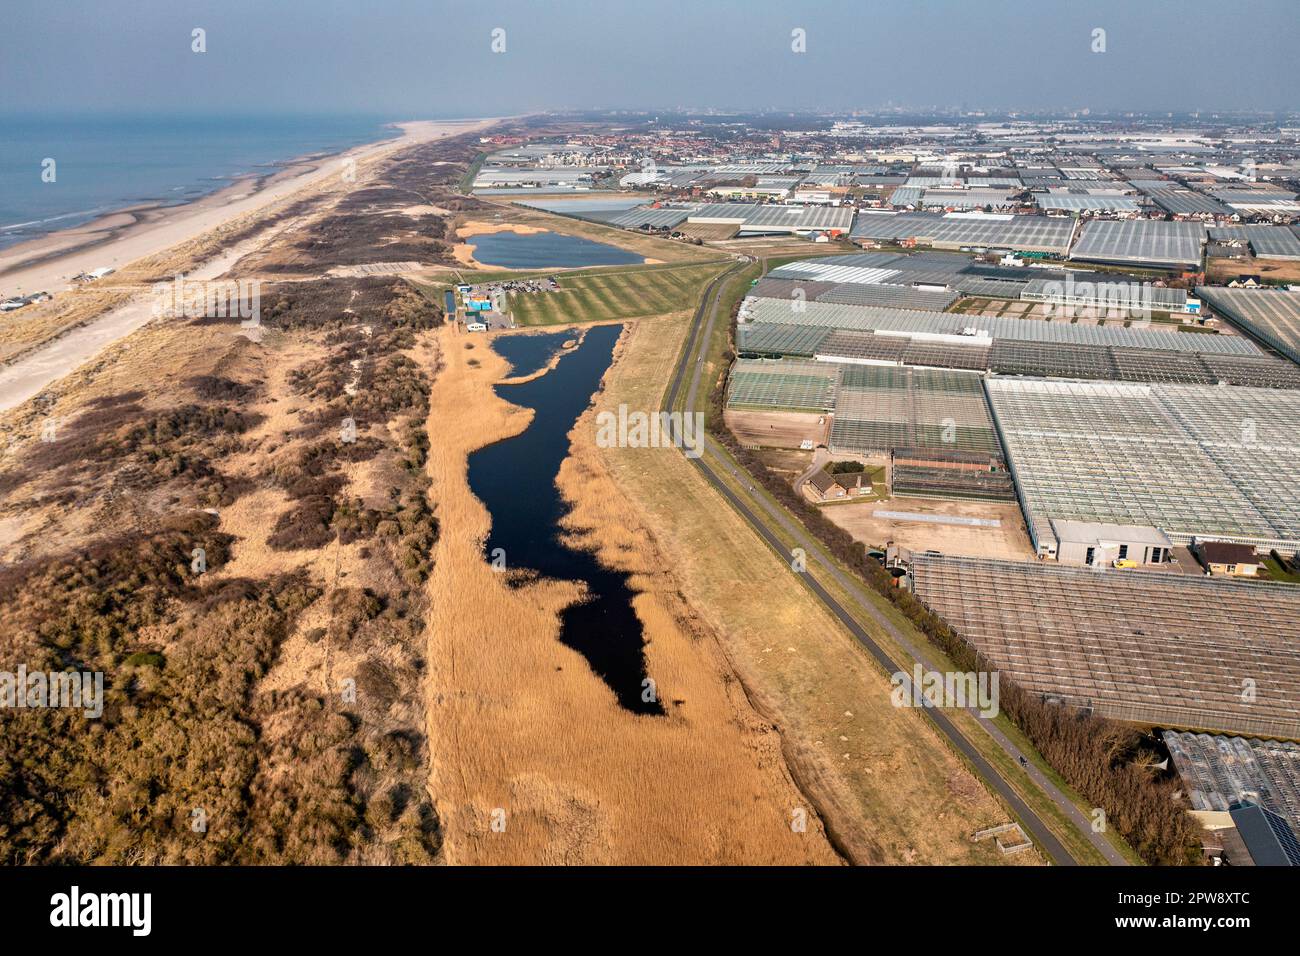 Pays-Bas, Õs-Gravezande, région du Westland. Horticulture en serres. Dunes sur la côte de la mer du Nord. Vue aérienne. Banque D'Images